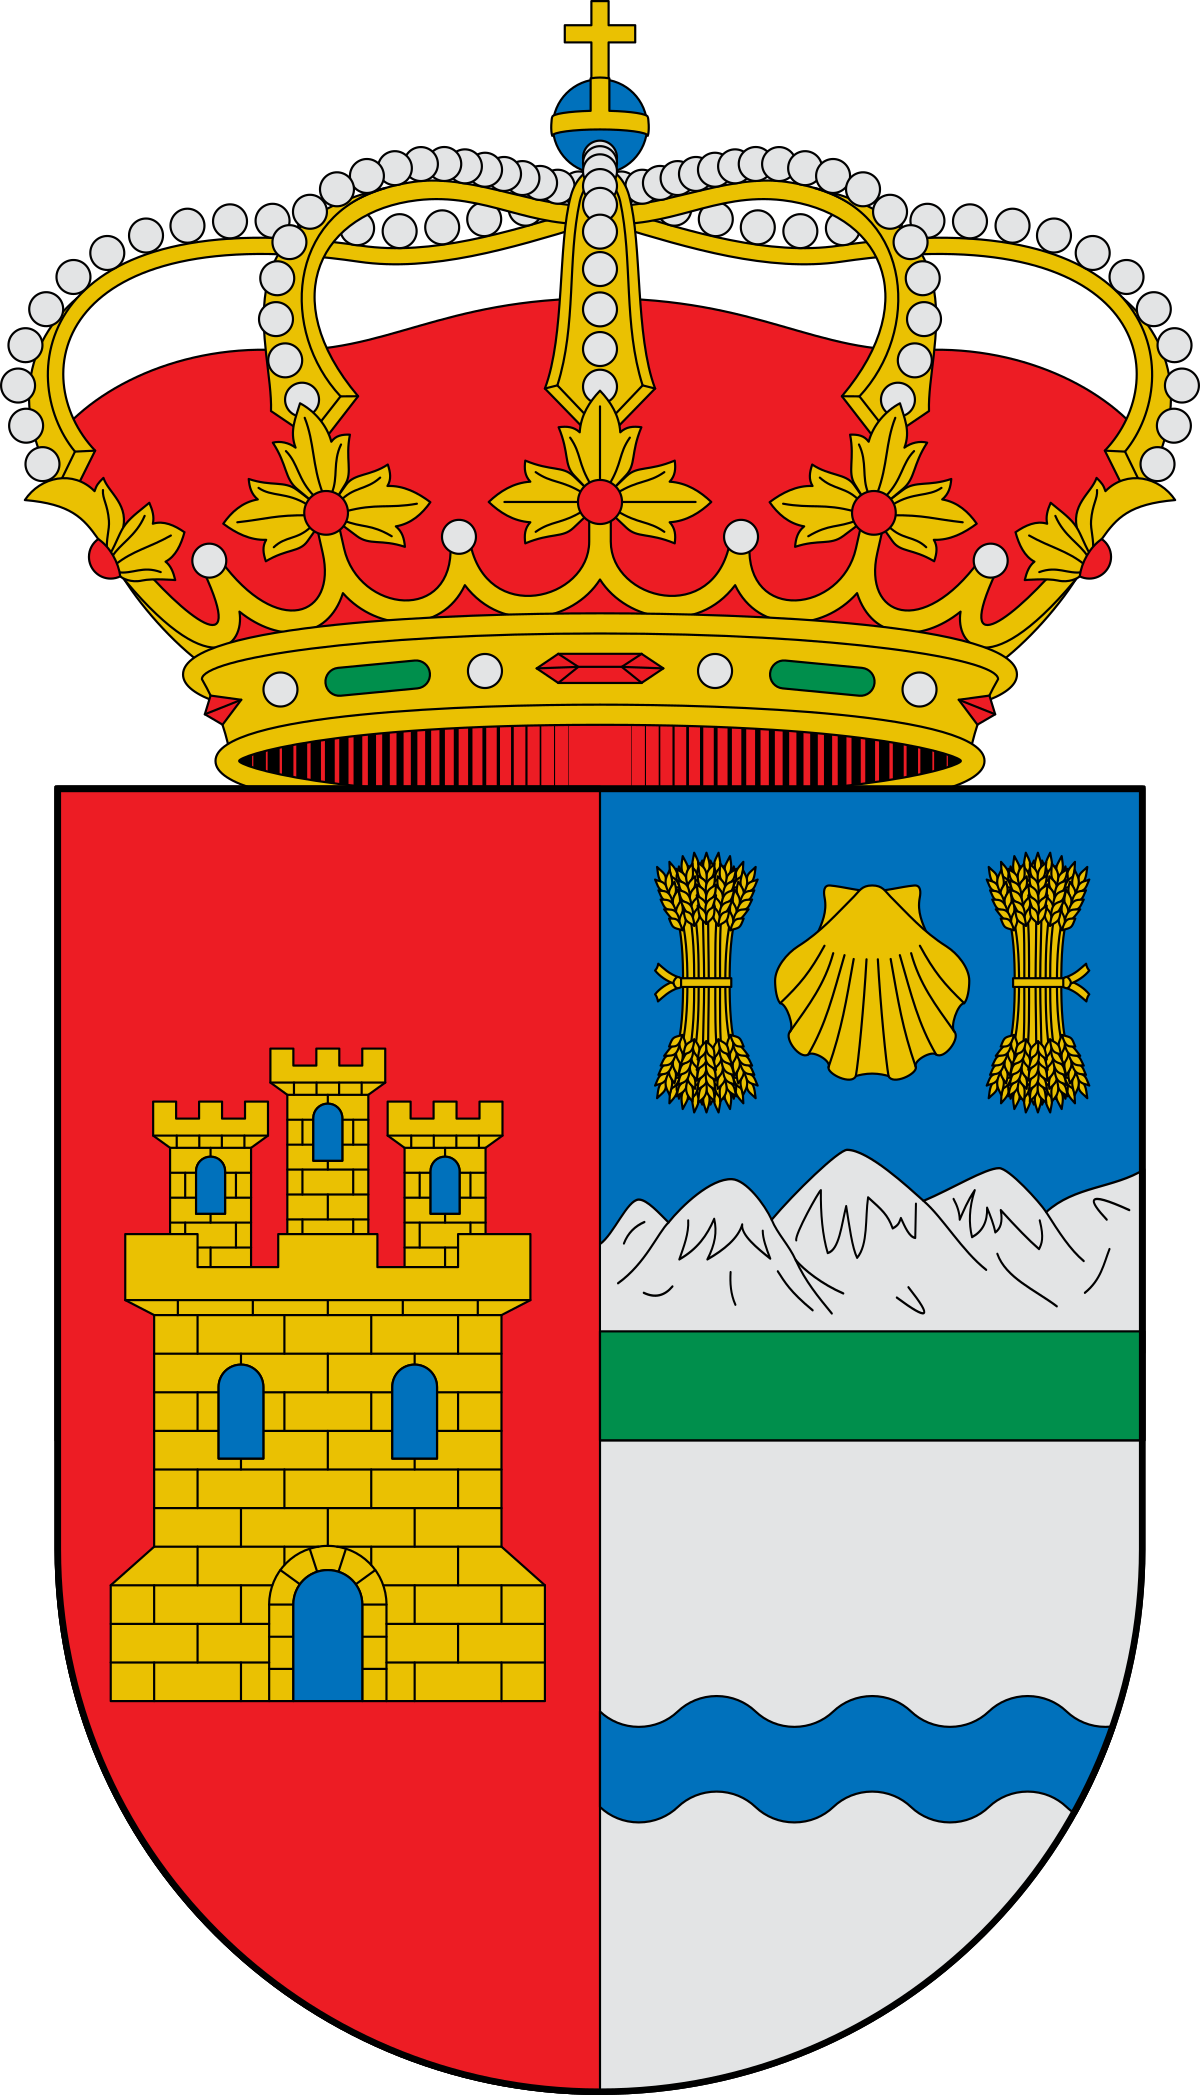 Escudo_de_la_Comarca_del_Arlanzón_(Burgos).svg